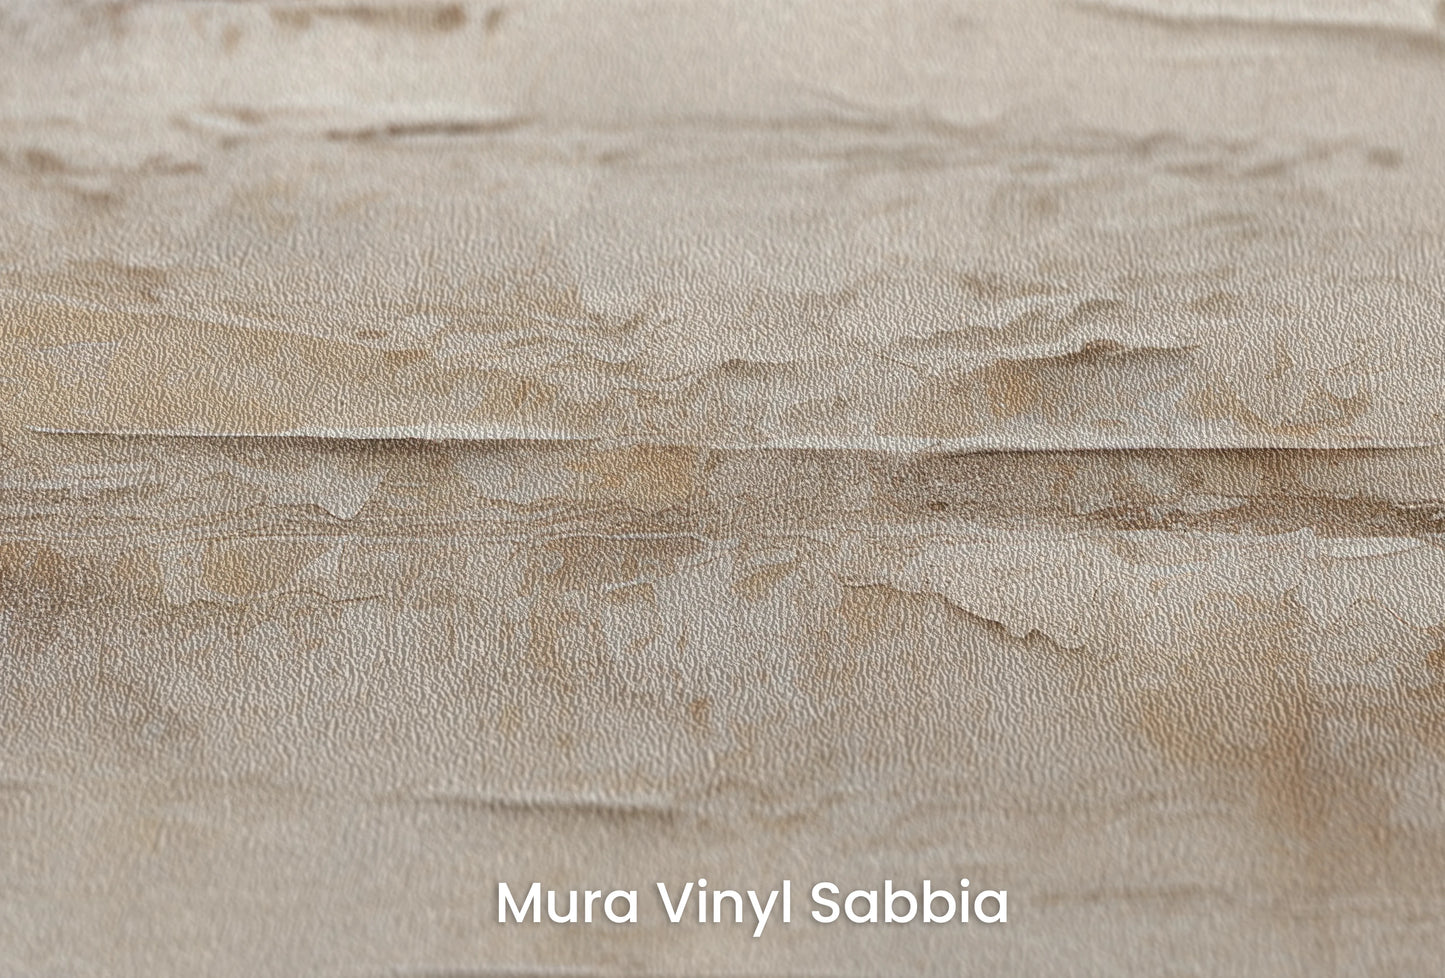 Zbliżenie na artystyczną fototapetę o nazwie Subtle Harmony na podłożu Mura Vinyl Sabbia struktura grubego ziarna piasku.